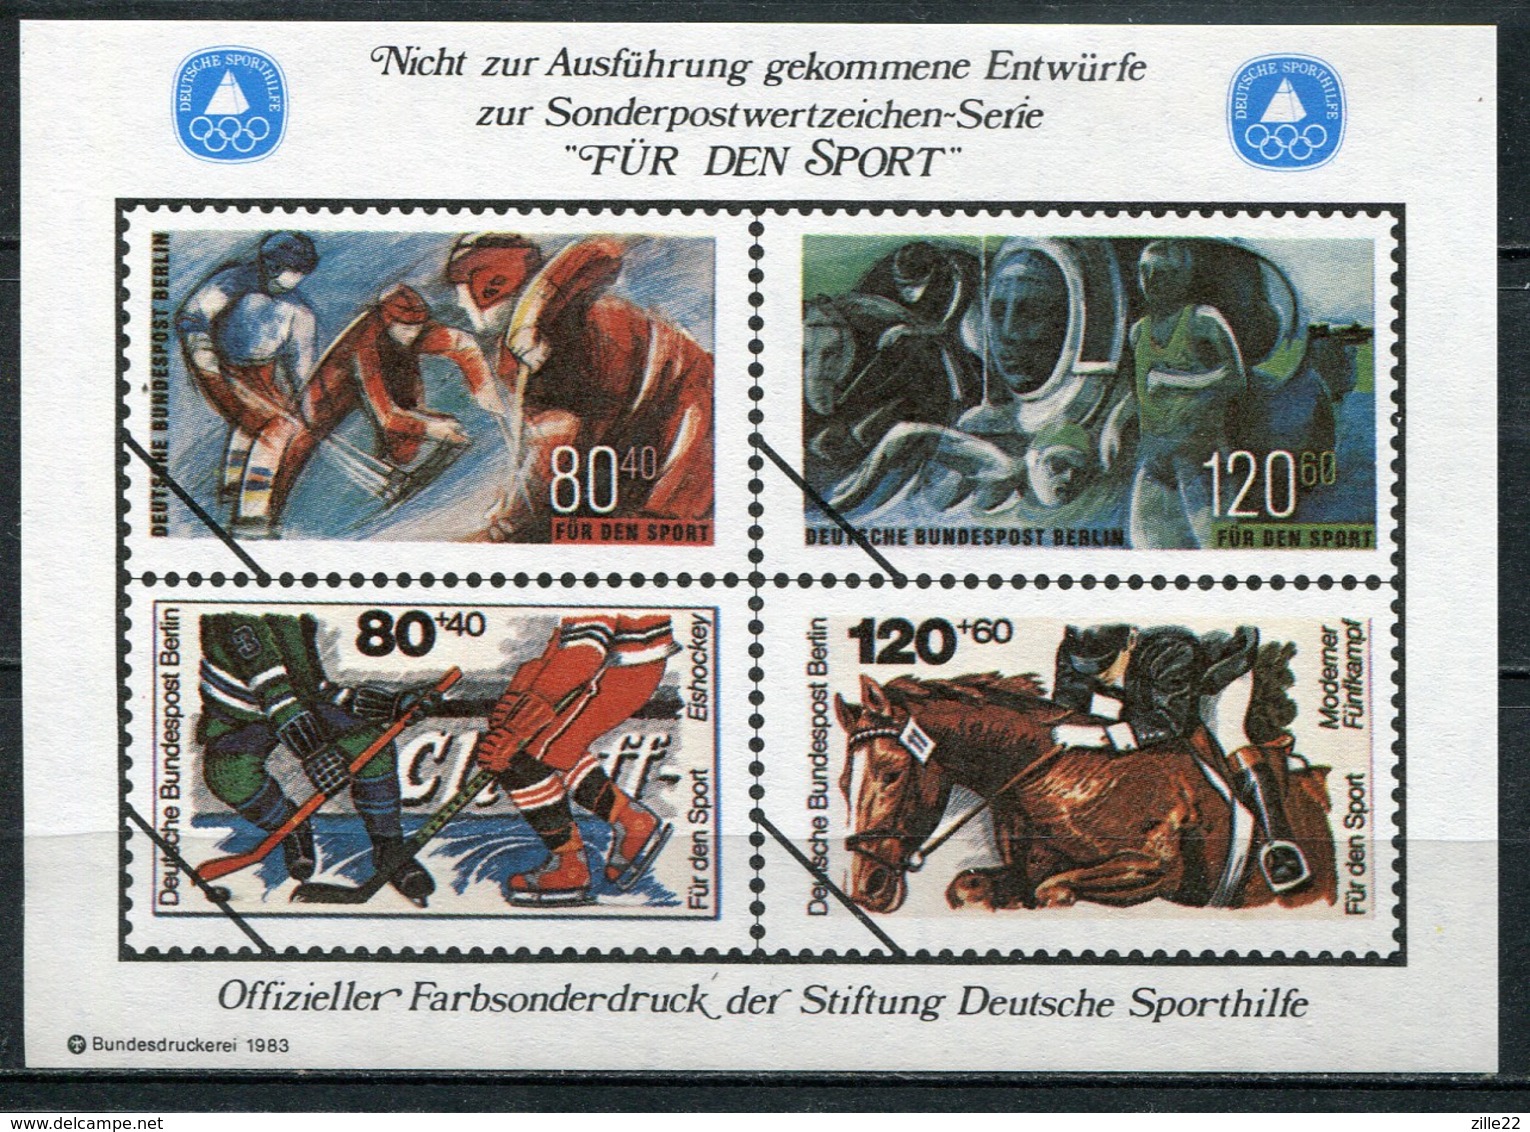 Cinderella Vignette Deutsche Sporthilfe Entwürfe "Für Den Sport" - Draft For Sports Series 1983 - Eishockey